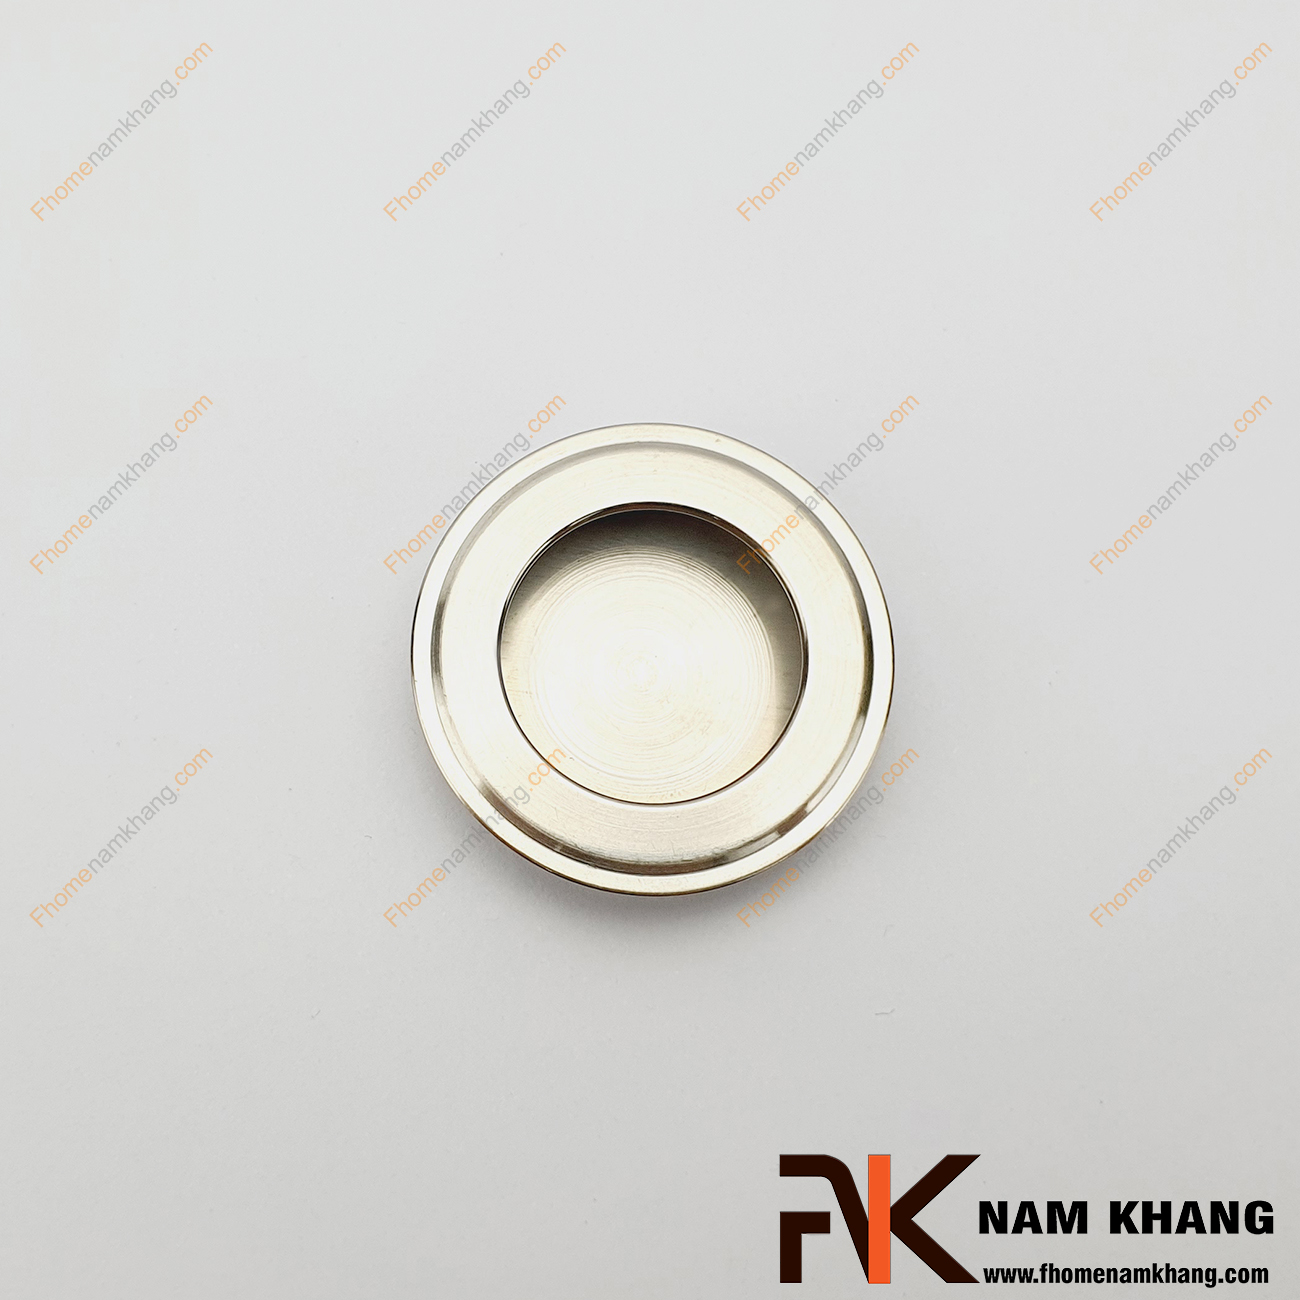 Tay nắm âm tủ dạng tròn NK463INOX-35B là dạng tay nắm âm inox dạng tròn sử dụng trên nhiều dạng cửa